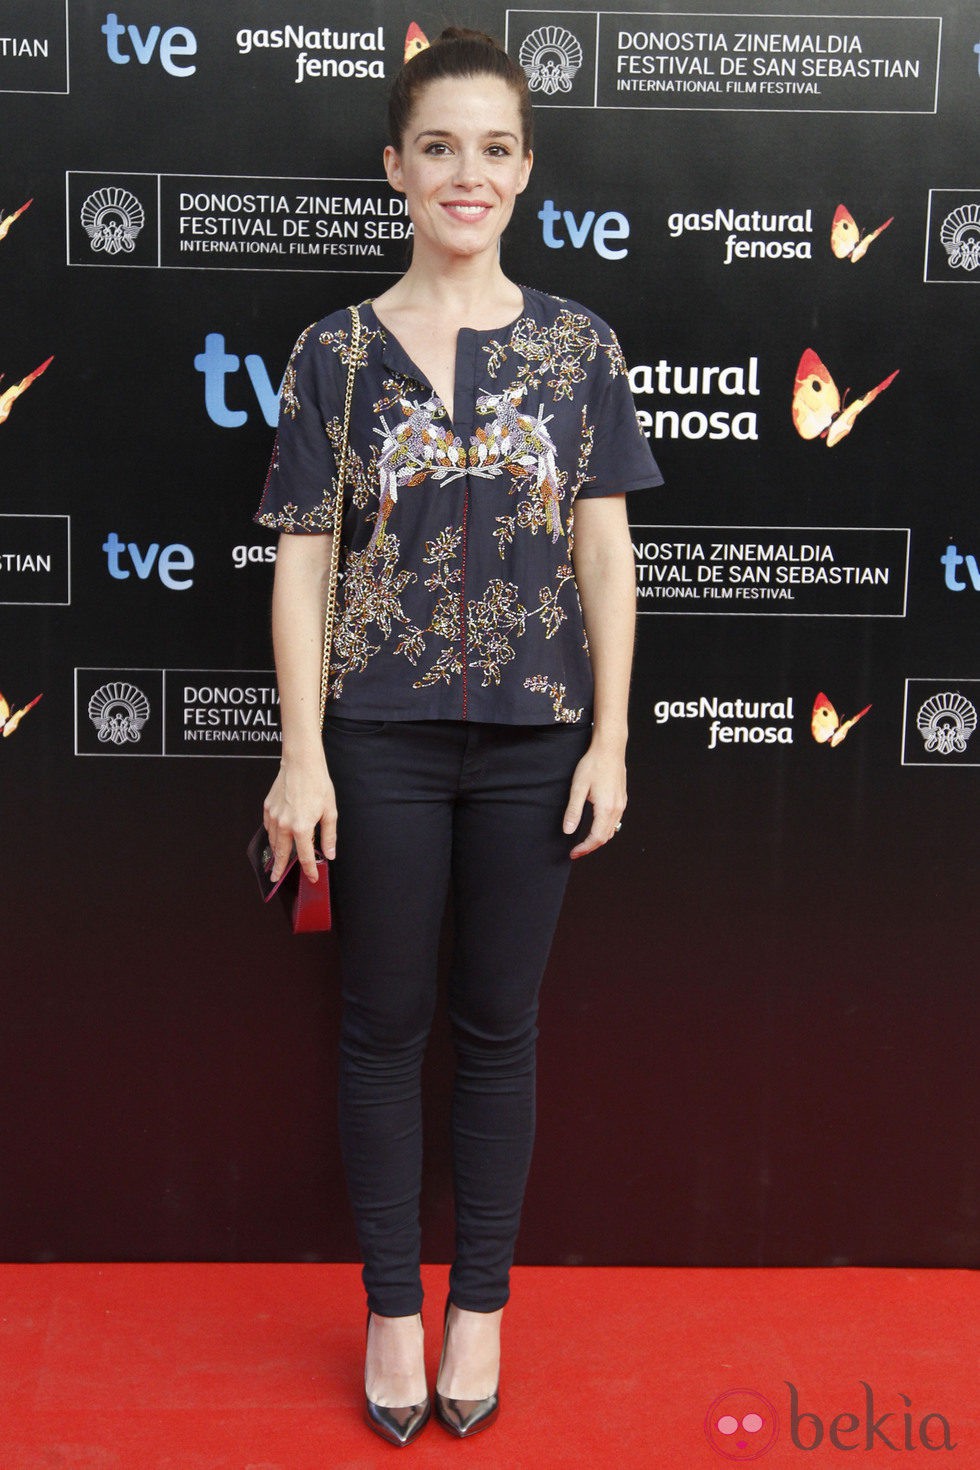 Nuria Gago en la presentación del Festival de Cine de San Sebastián 2013